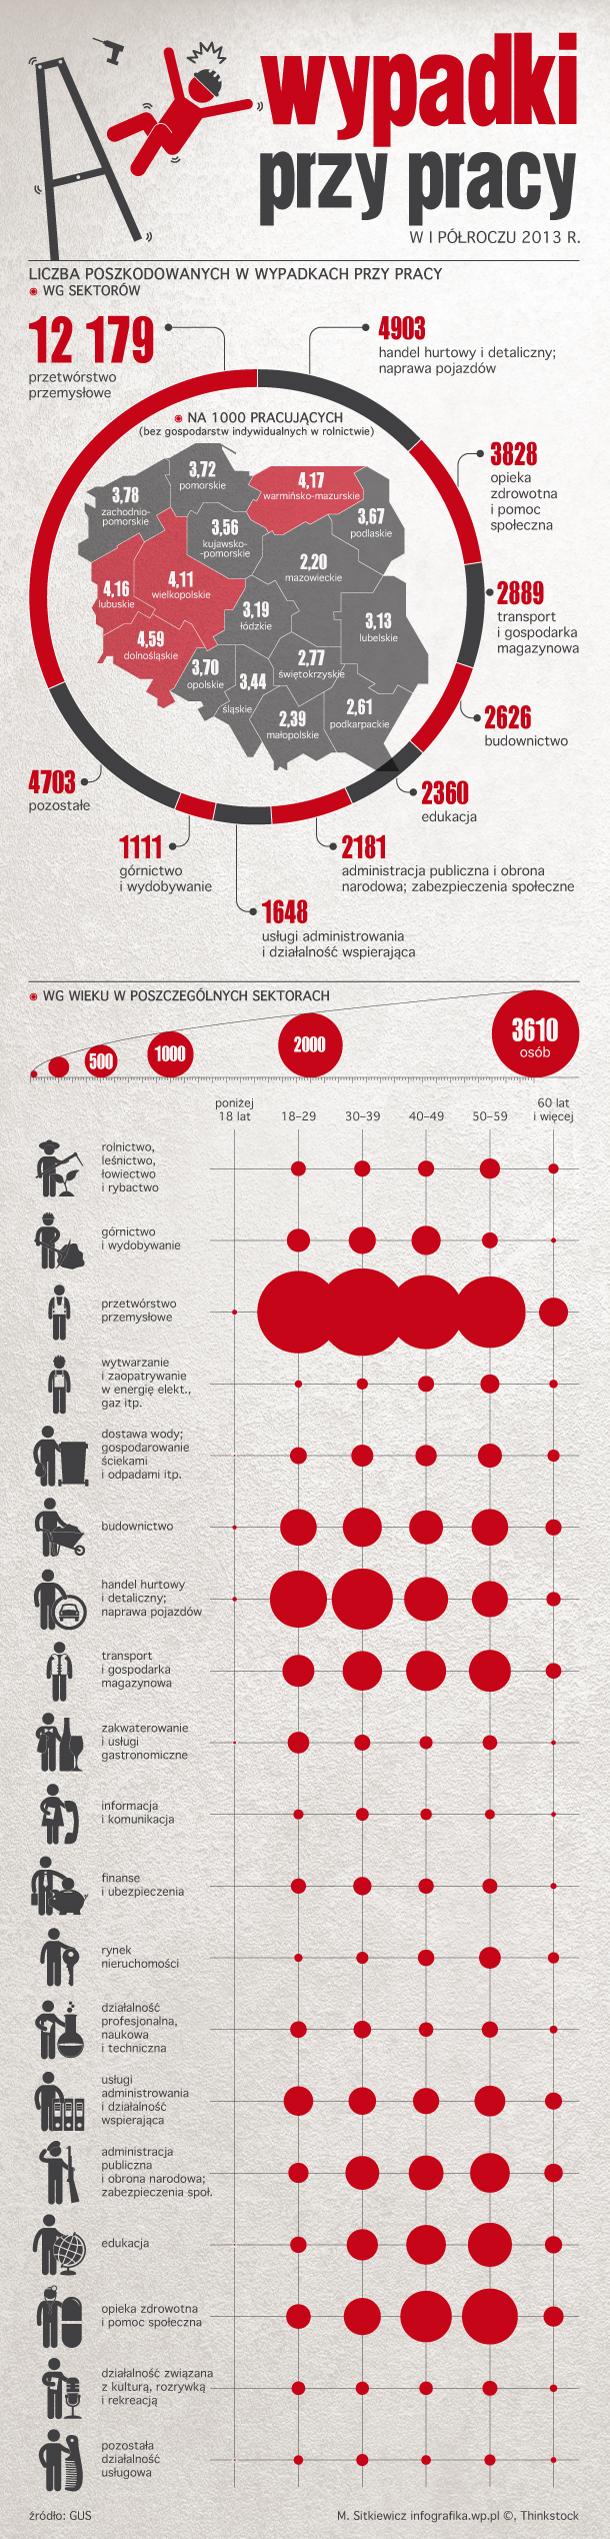 wypadki_praca_infografika_610